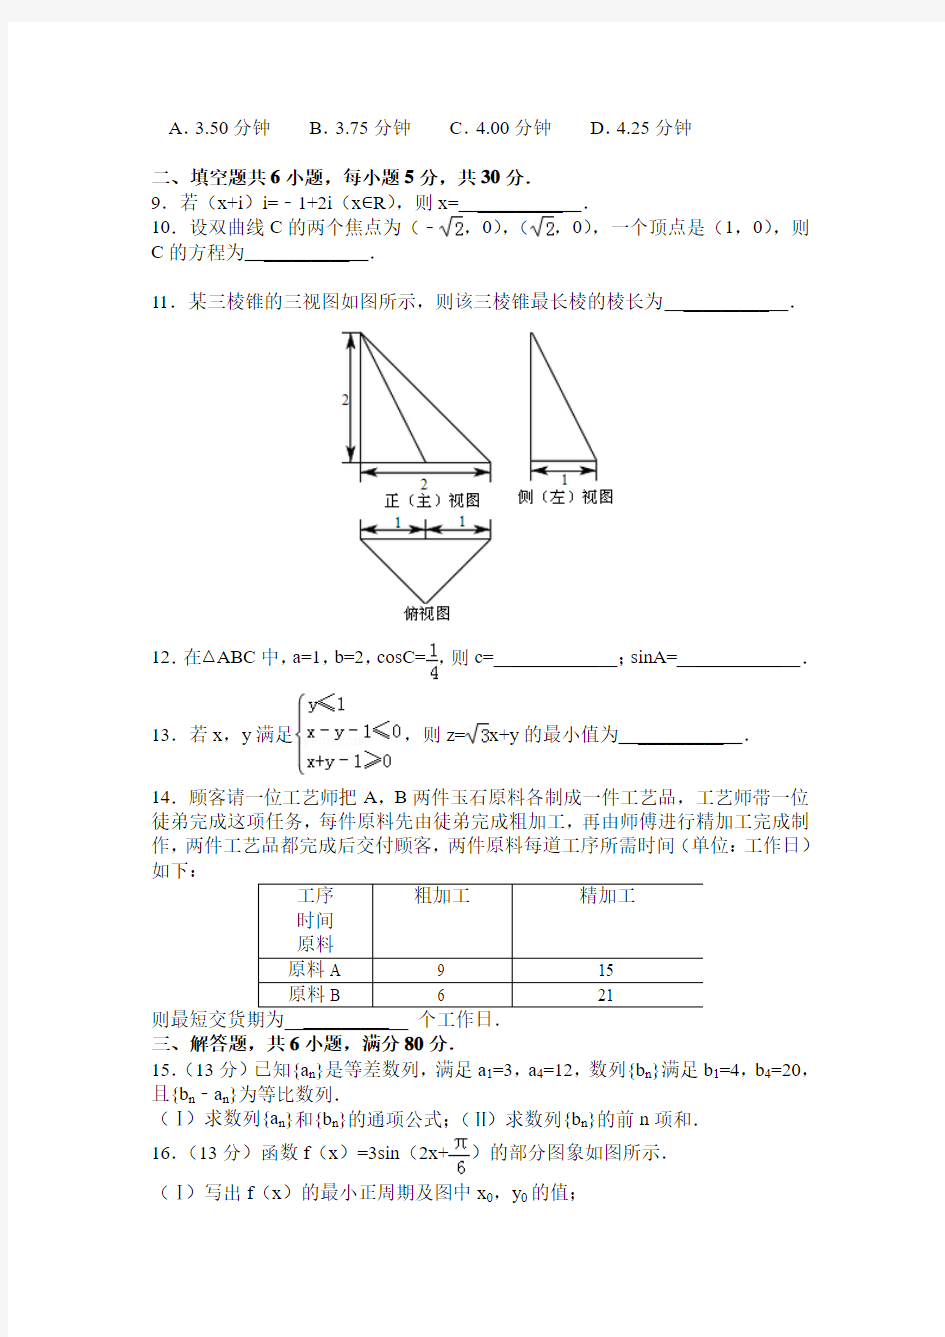 2014年北京高考文科数学试卷